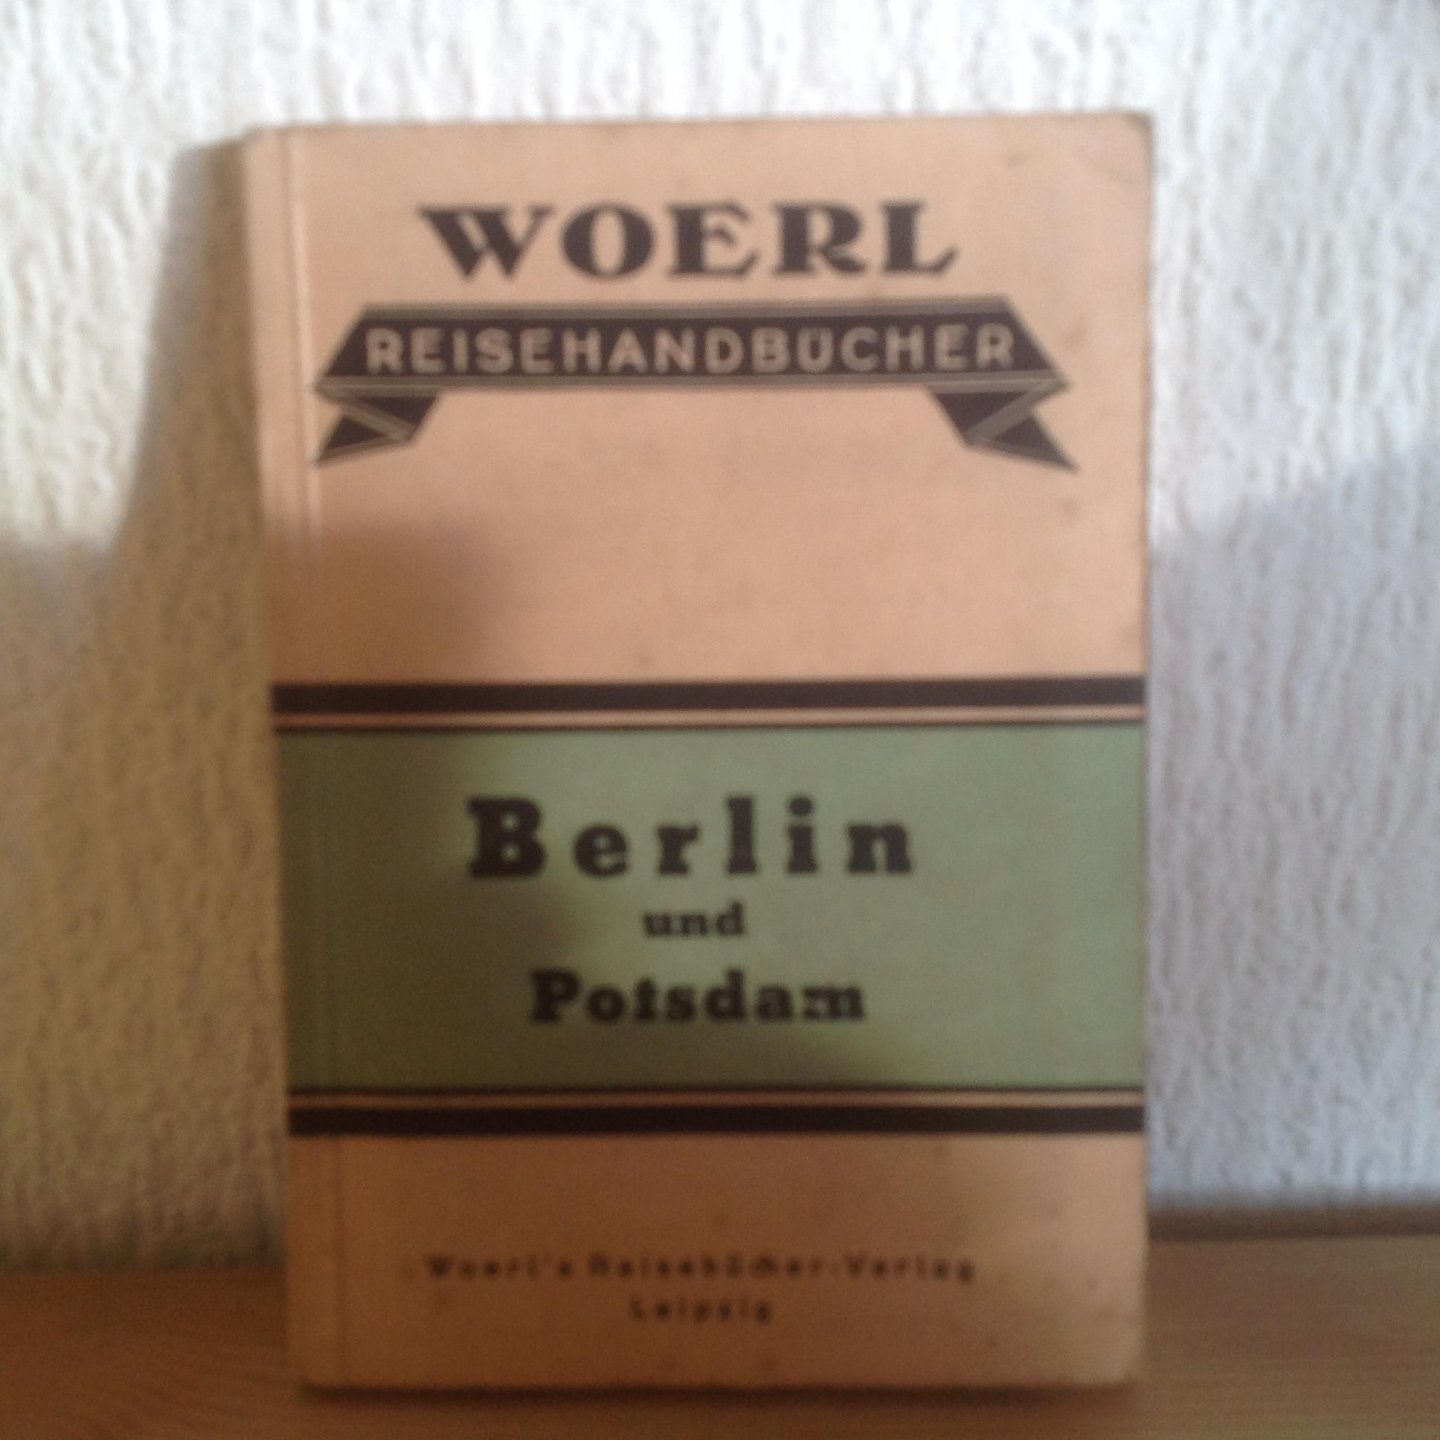  - Reise handbuch BERLIN UND POTSDAM